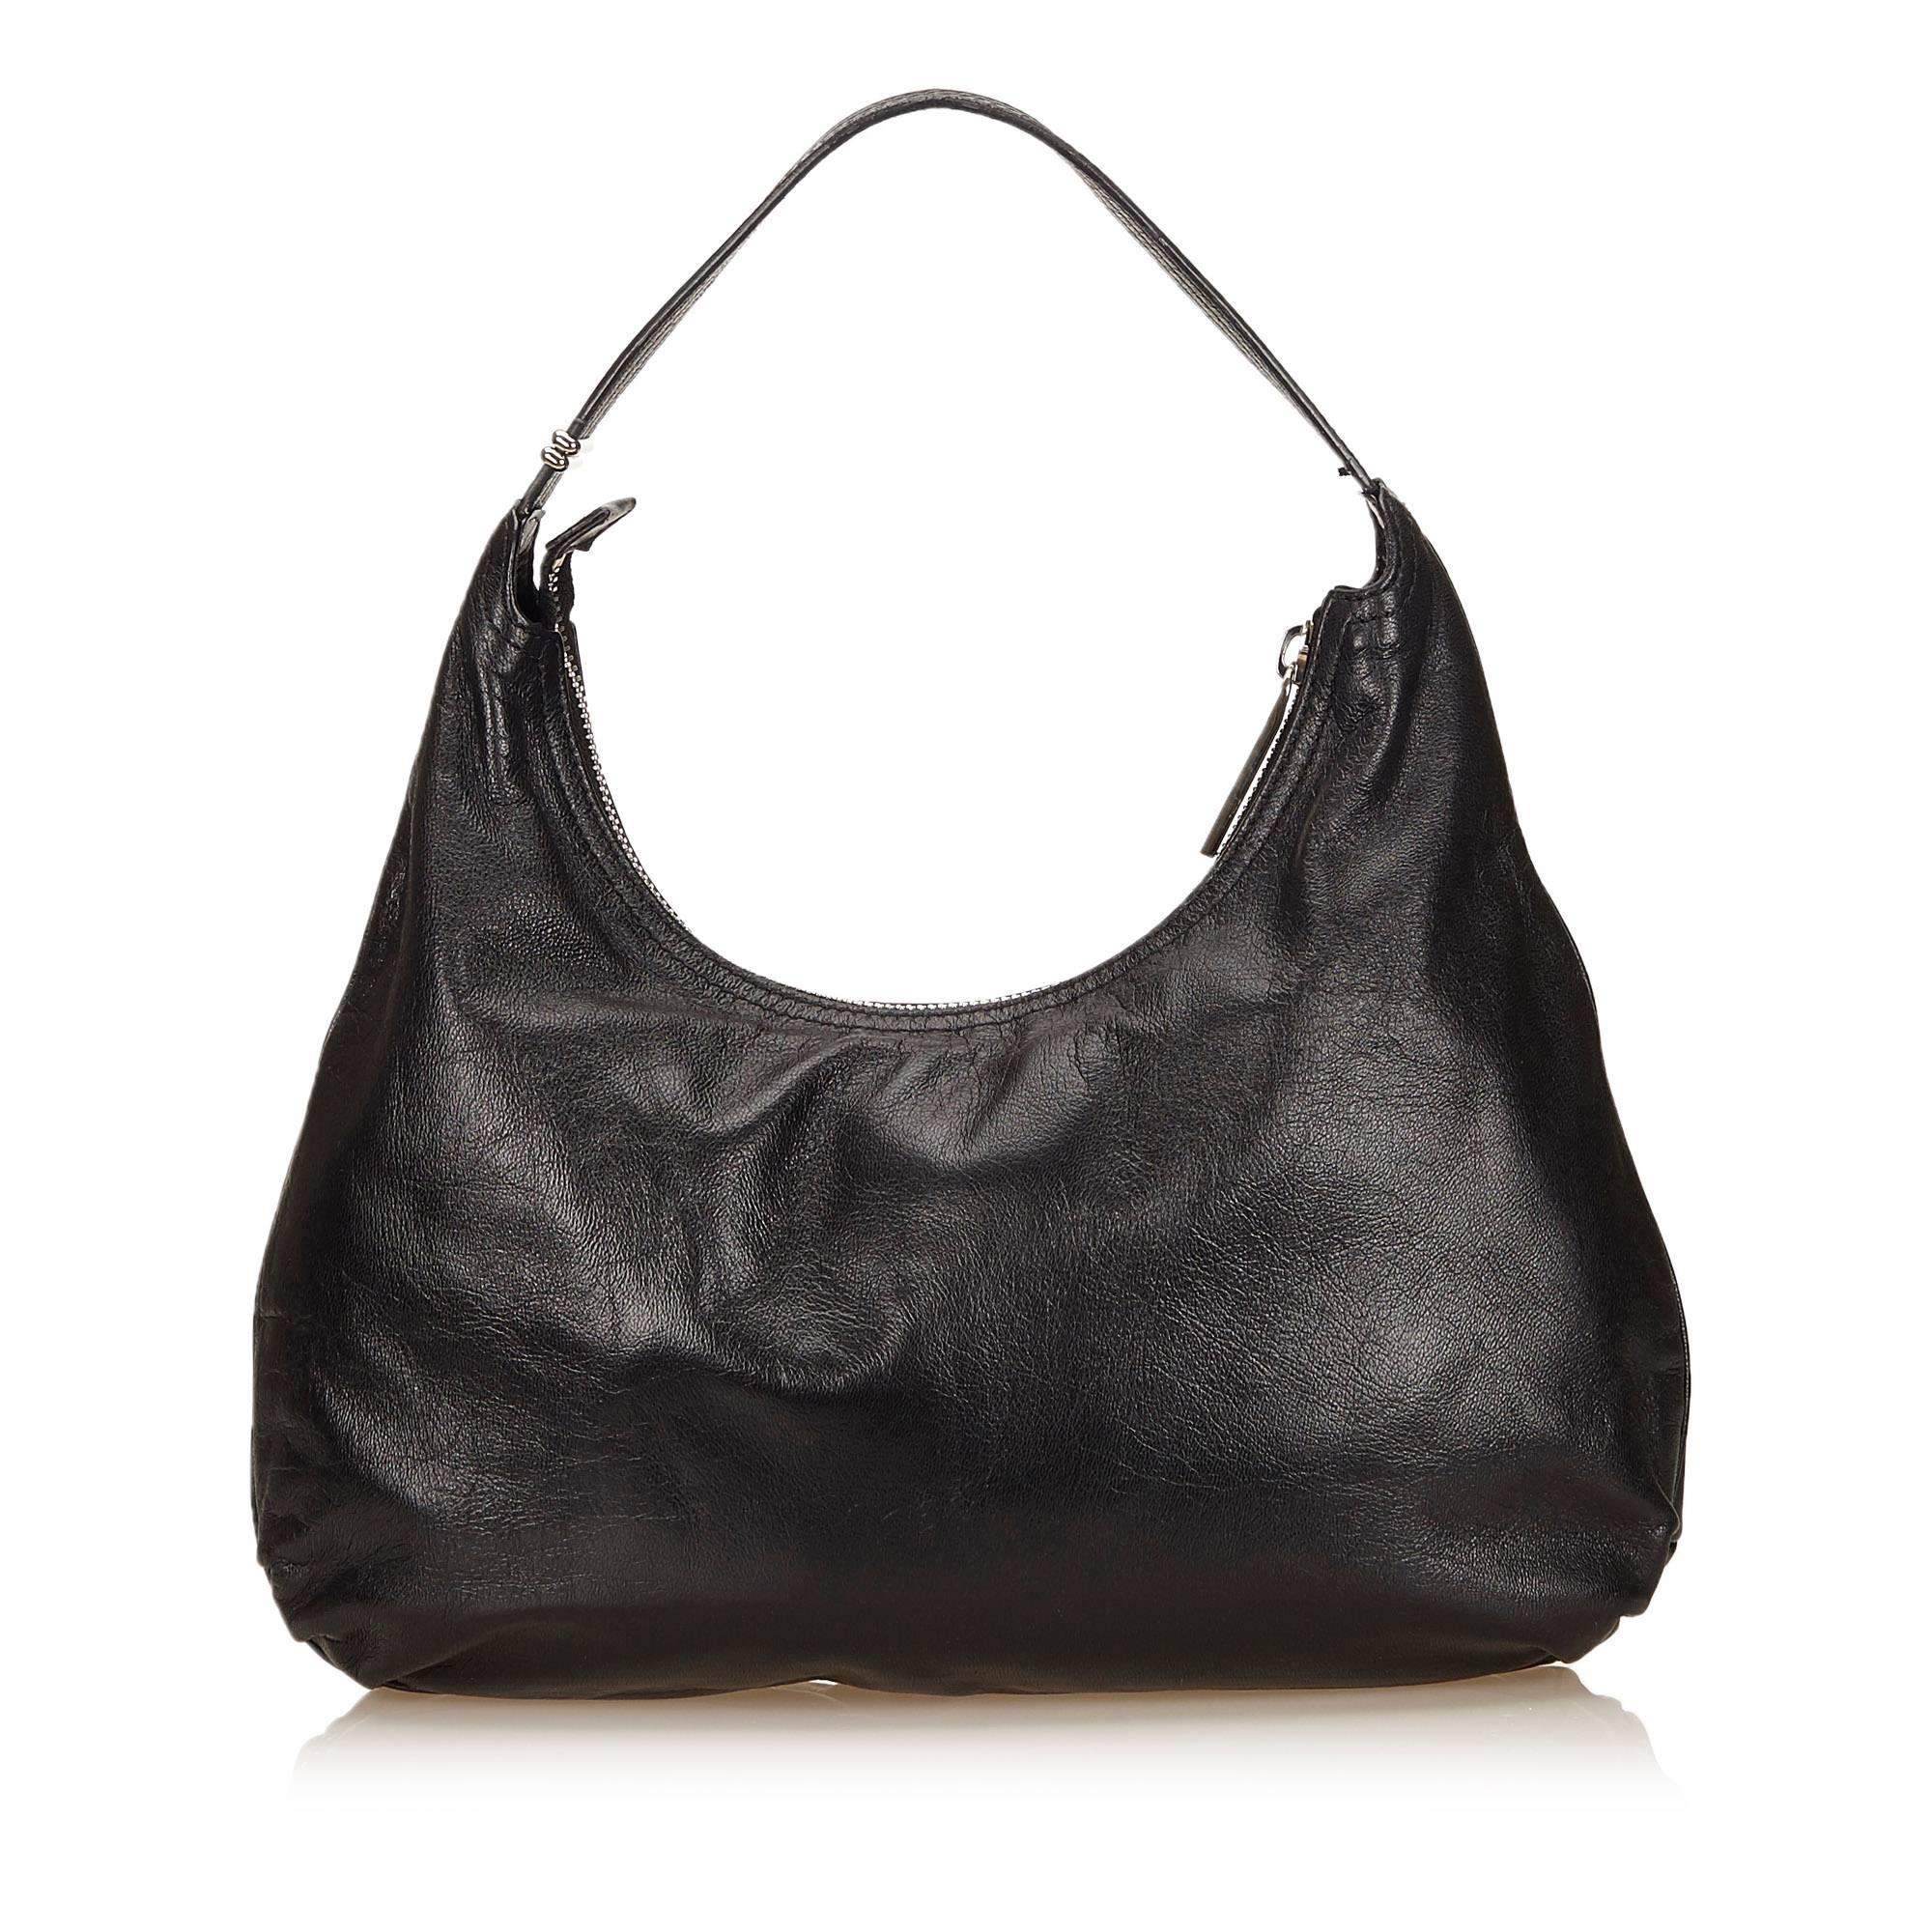 Product details: Black leather shoulder bag by Fendi. Single shoulder strap. Top zip closure. Lined interior with inner slide pockets. Front exterior pocket. Silvertone hardware. 14